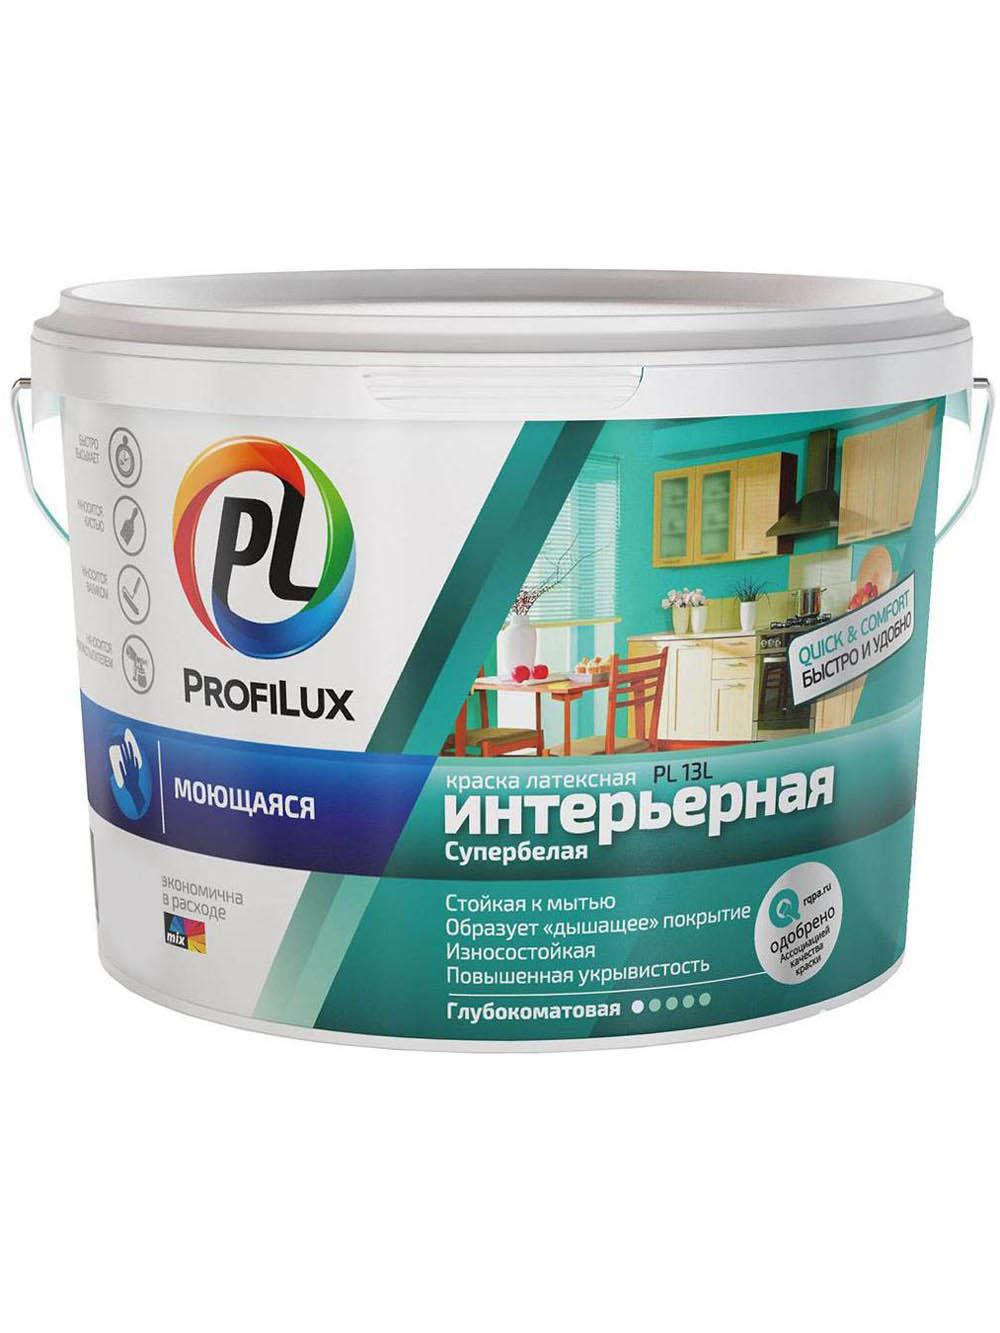 90190663 Краска для стен и потолков для влажных помещений латексная Profilux ВД PL-13L глубокоматовая супербелая база 1 7 кг STLM-0126805 DUFA